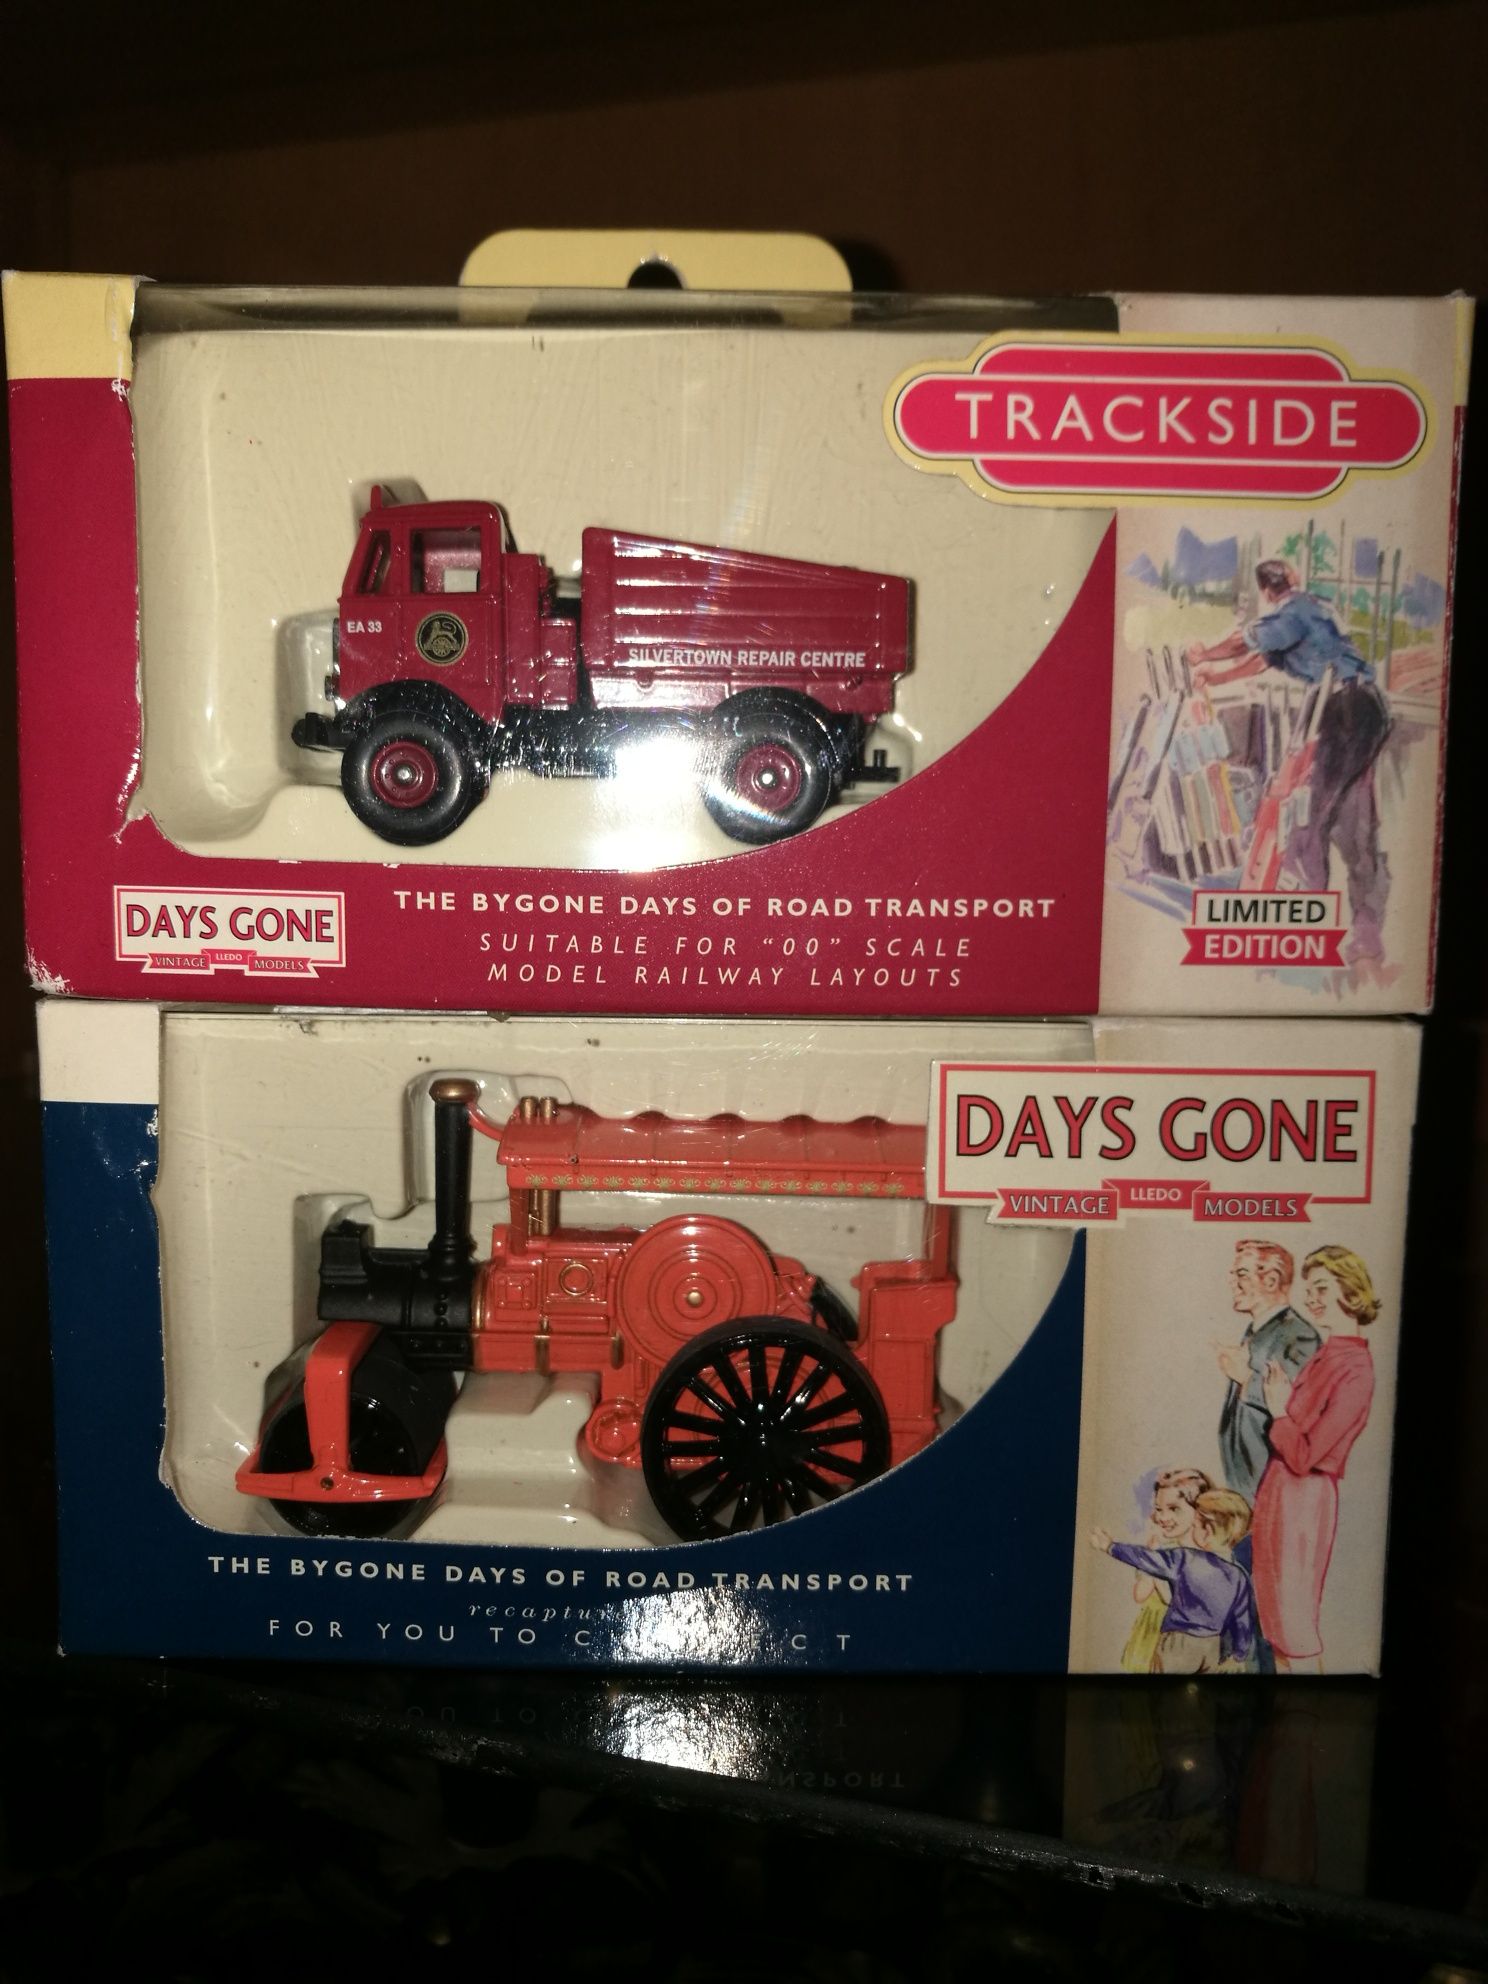 Stare zabawki auta modele kolekcjonerskie oryginalnie zapakowane